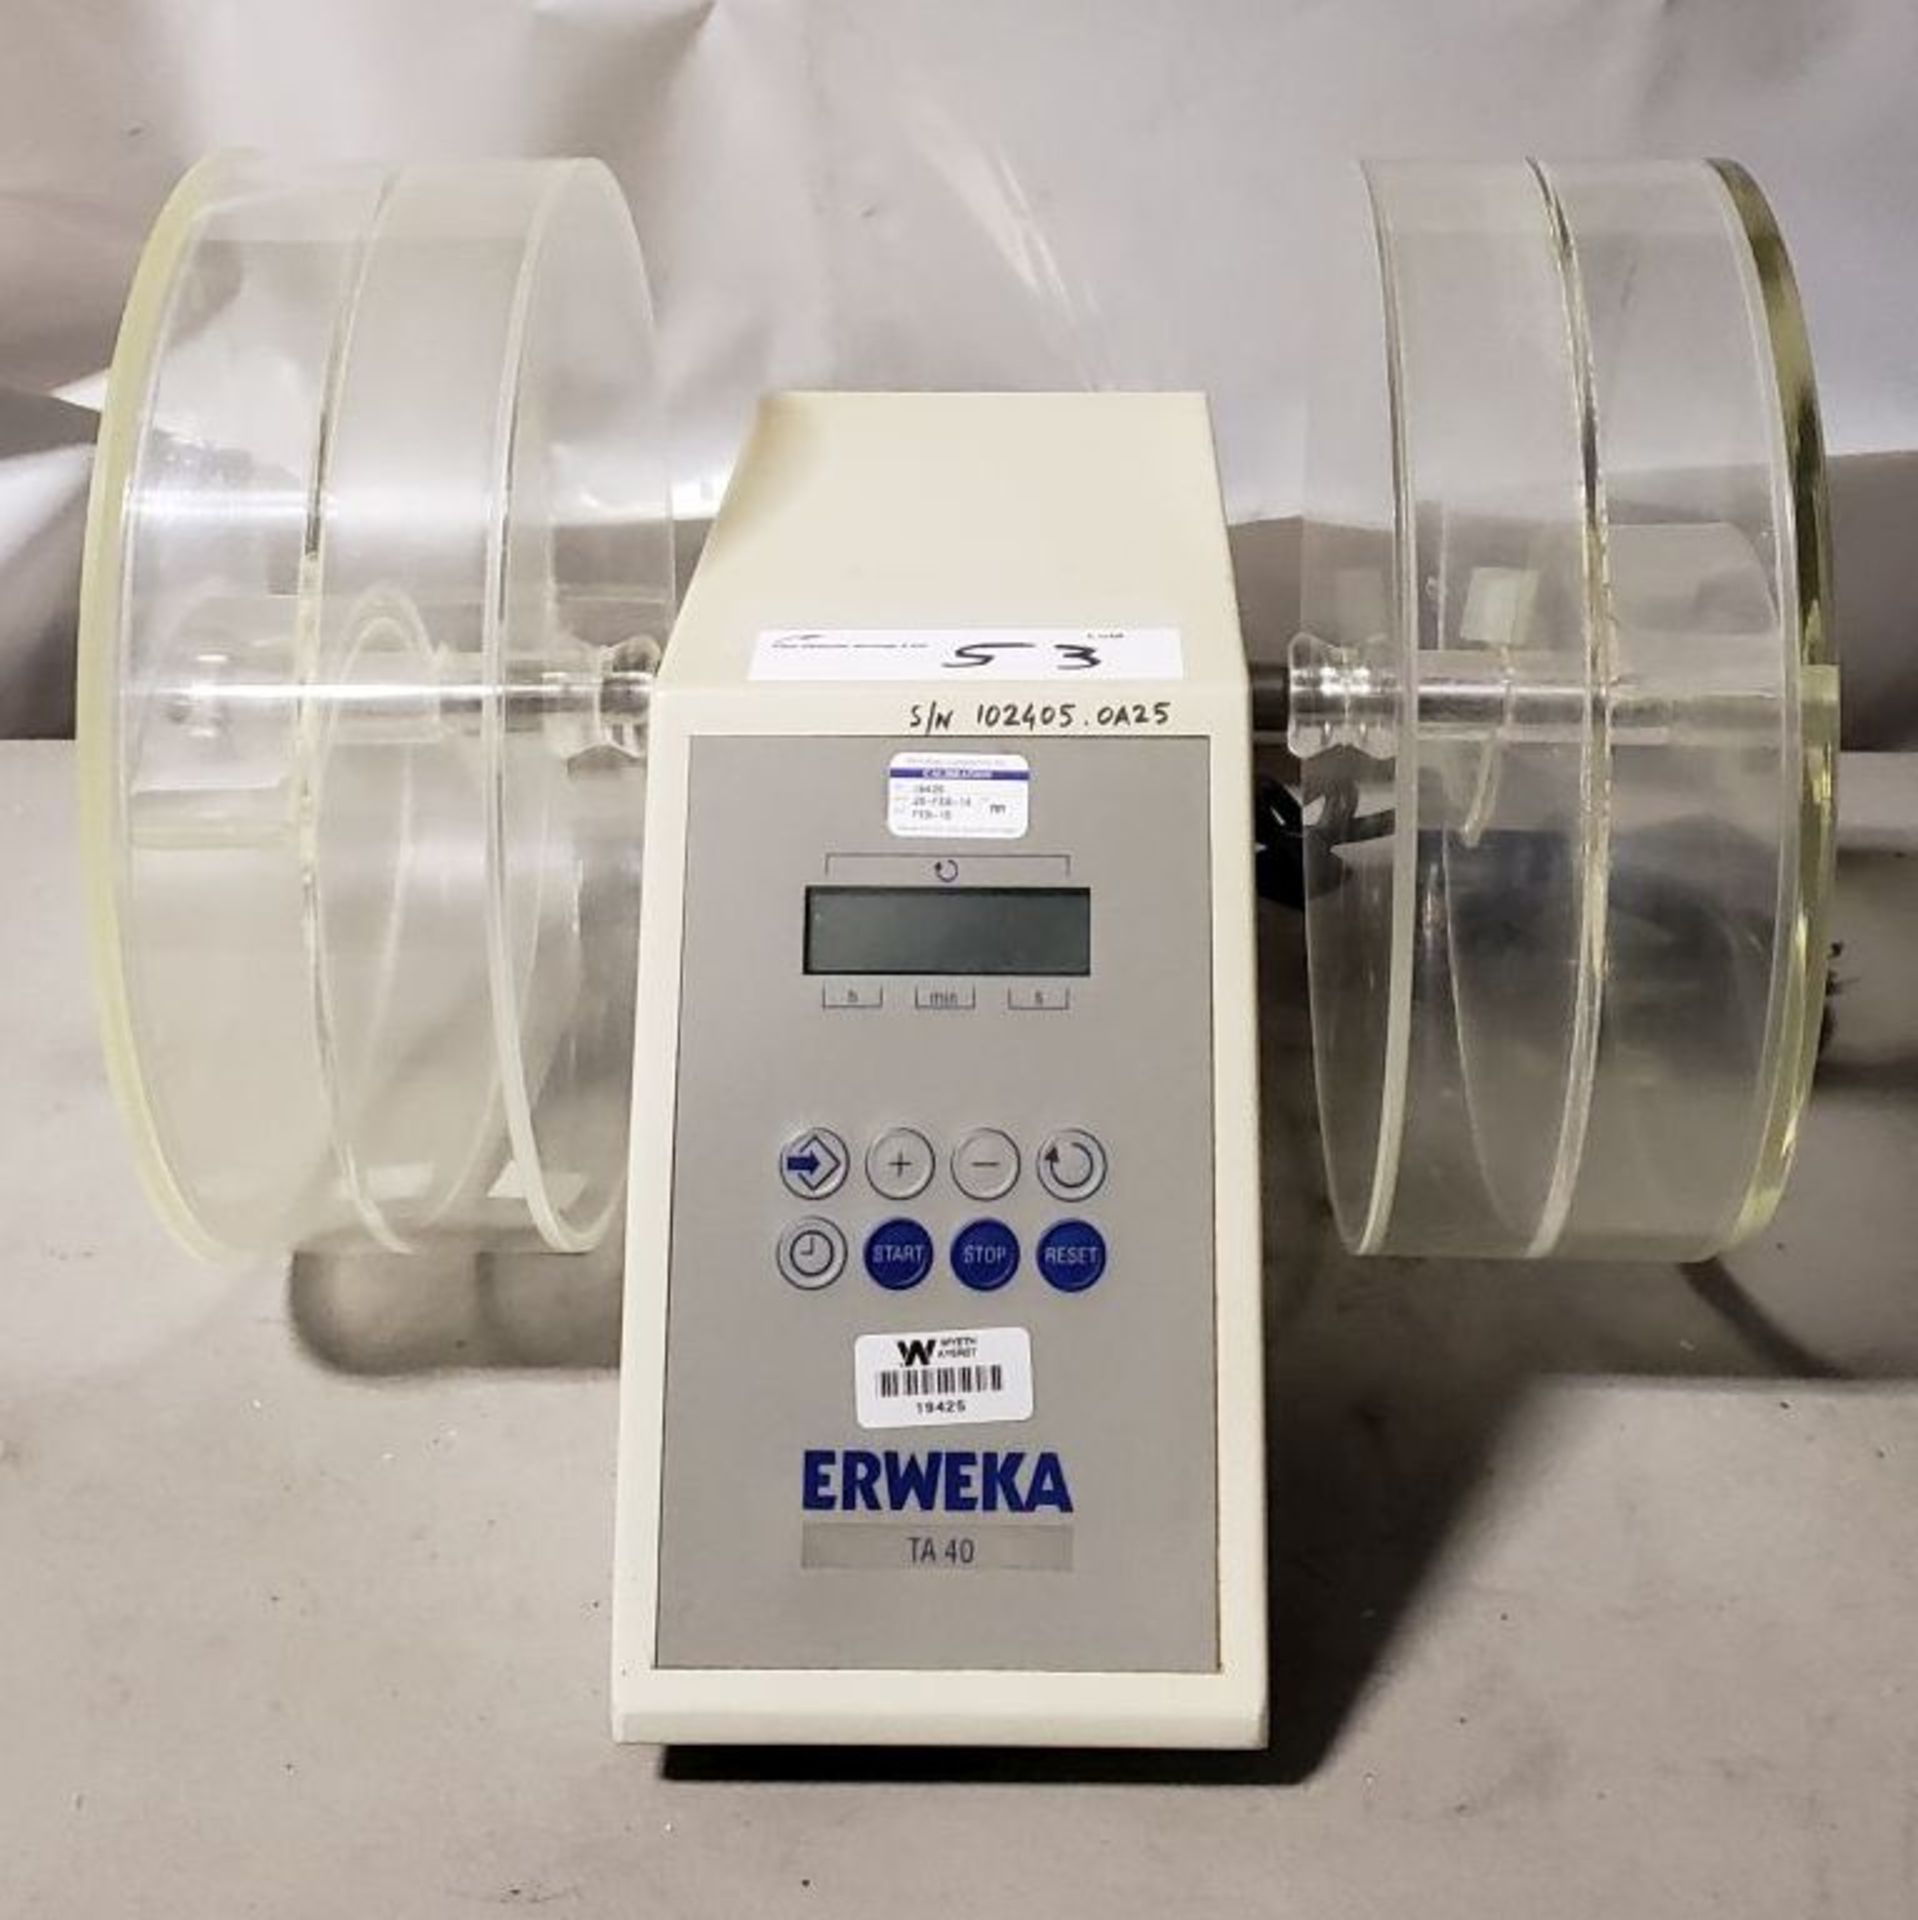 Erweka TA 40 Friability Tester - Image 2 of 6